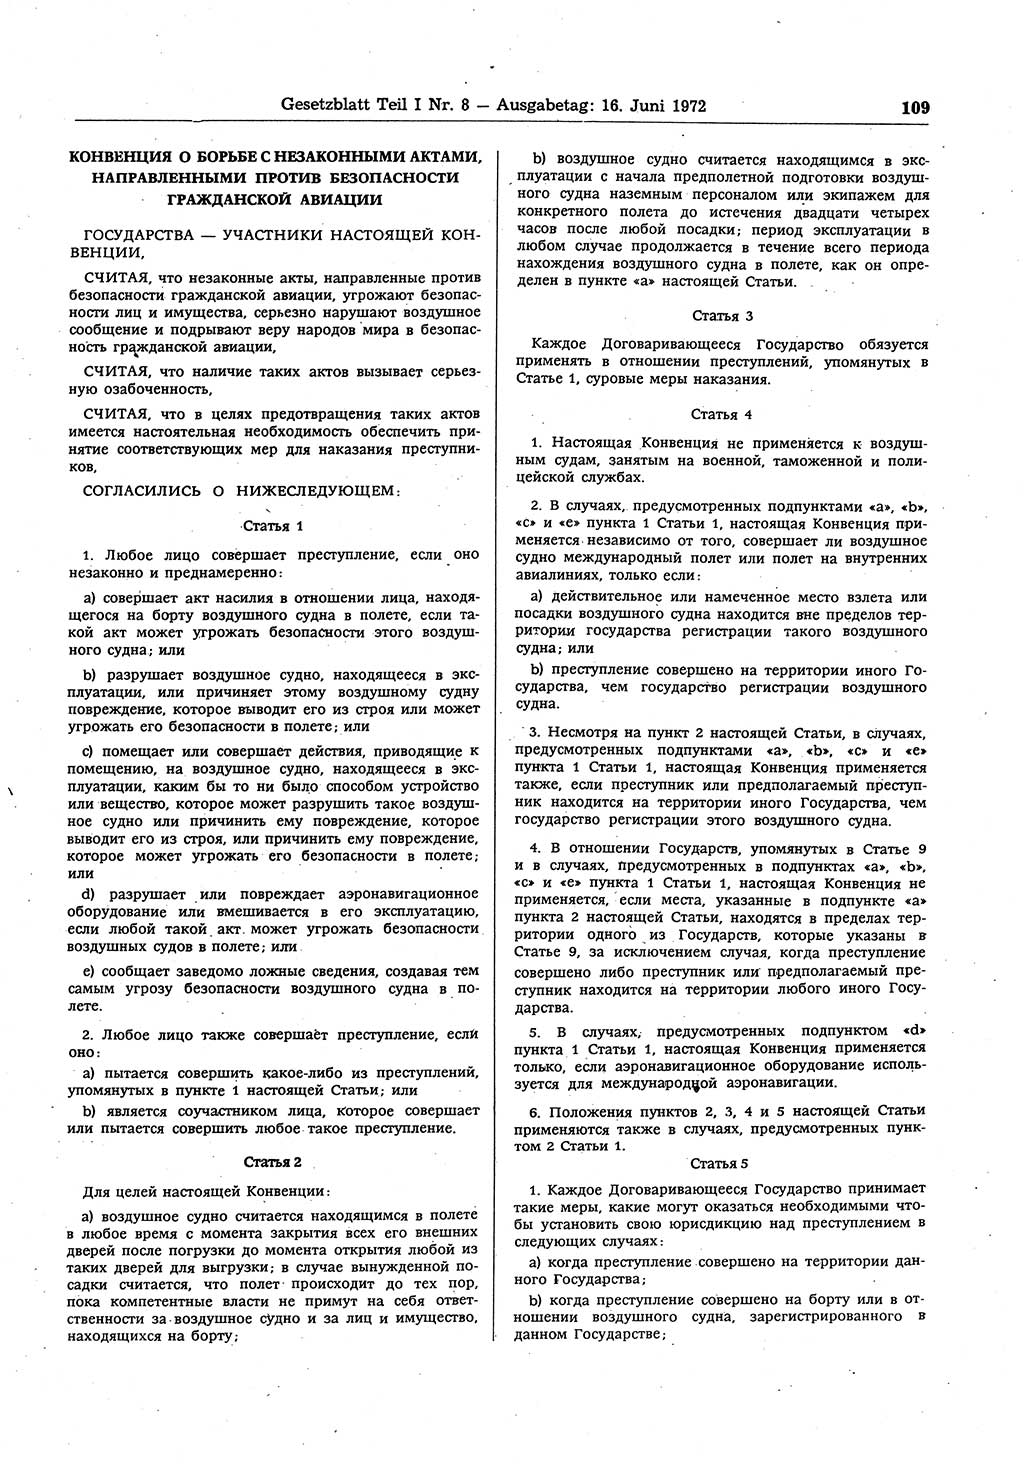 Gesetzblatt (GBl.) der Deutschen Demokratischen Republik (DDR) Teil Ⅰ 1972, Seite 109 (GBl. DDR Ⅰ 1972, S. 109)